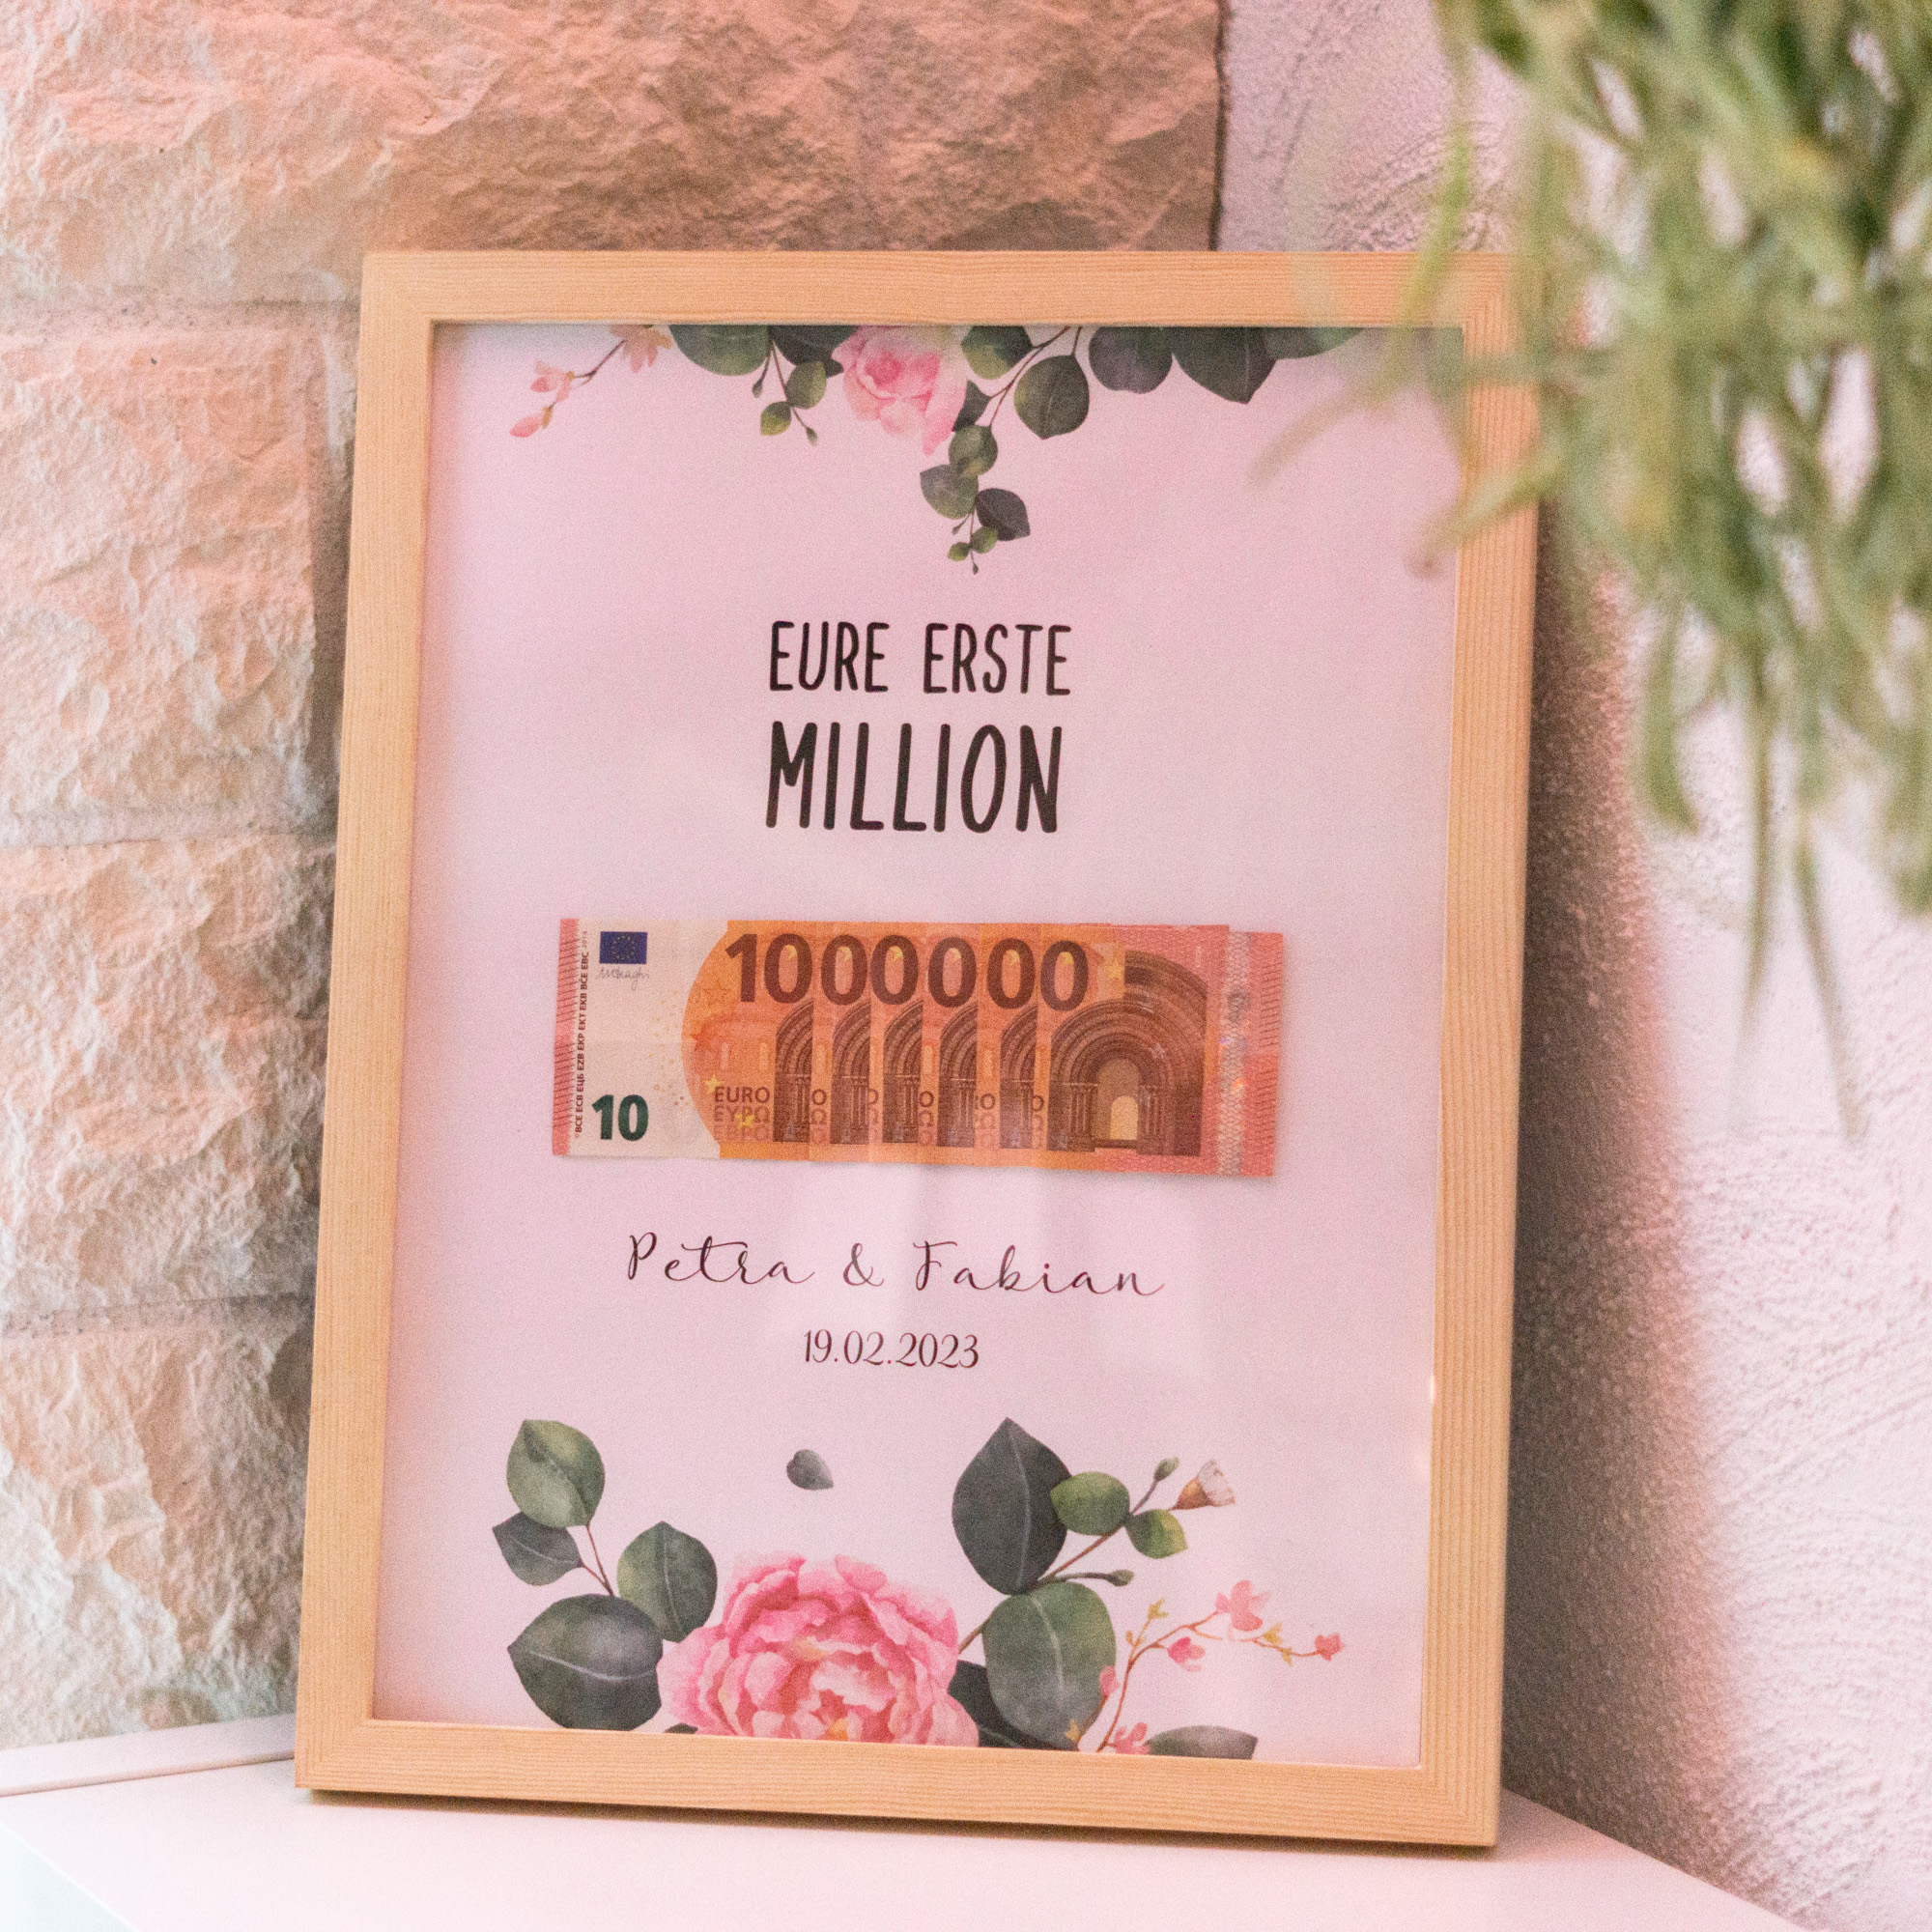 Kreative Geldgeschenkvorlage Erste Million zum selbst ausdrucken für die Hochzeit - eine tolle Geschenkidee